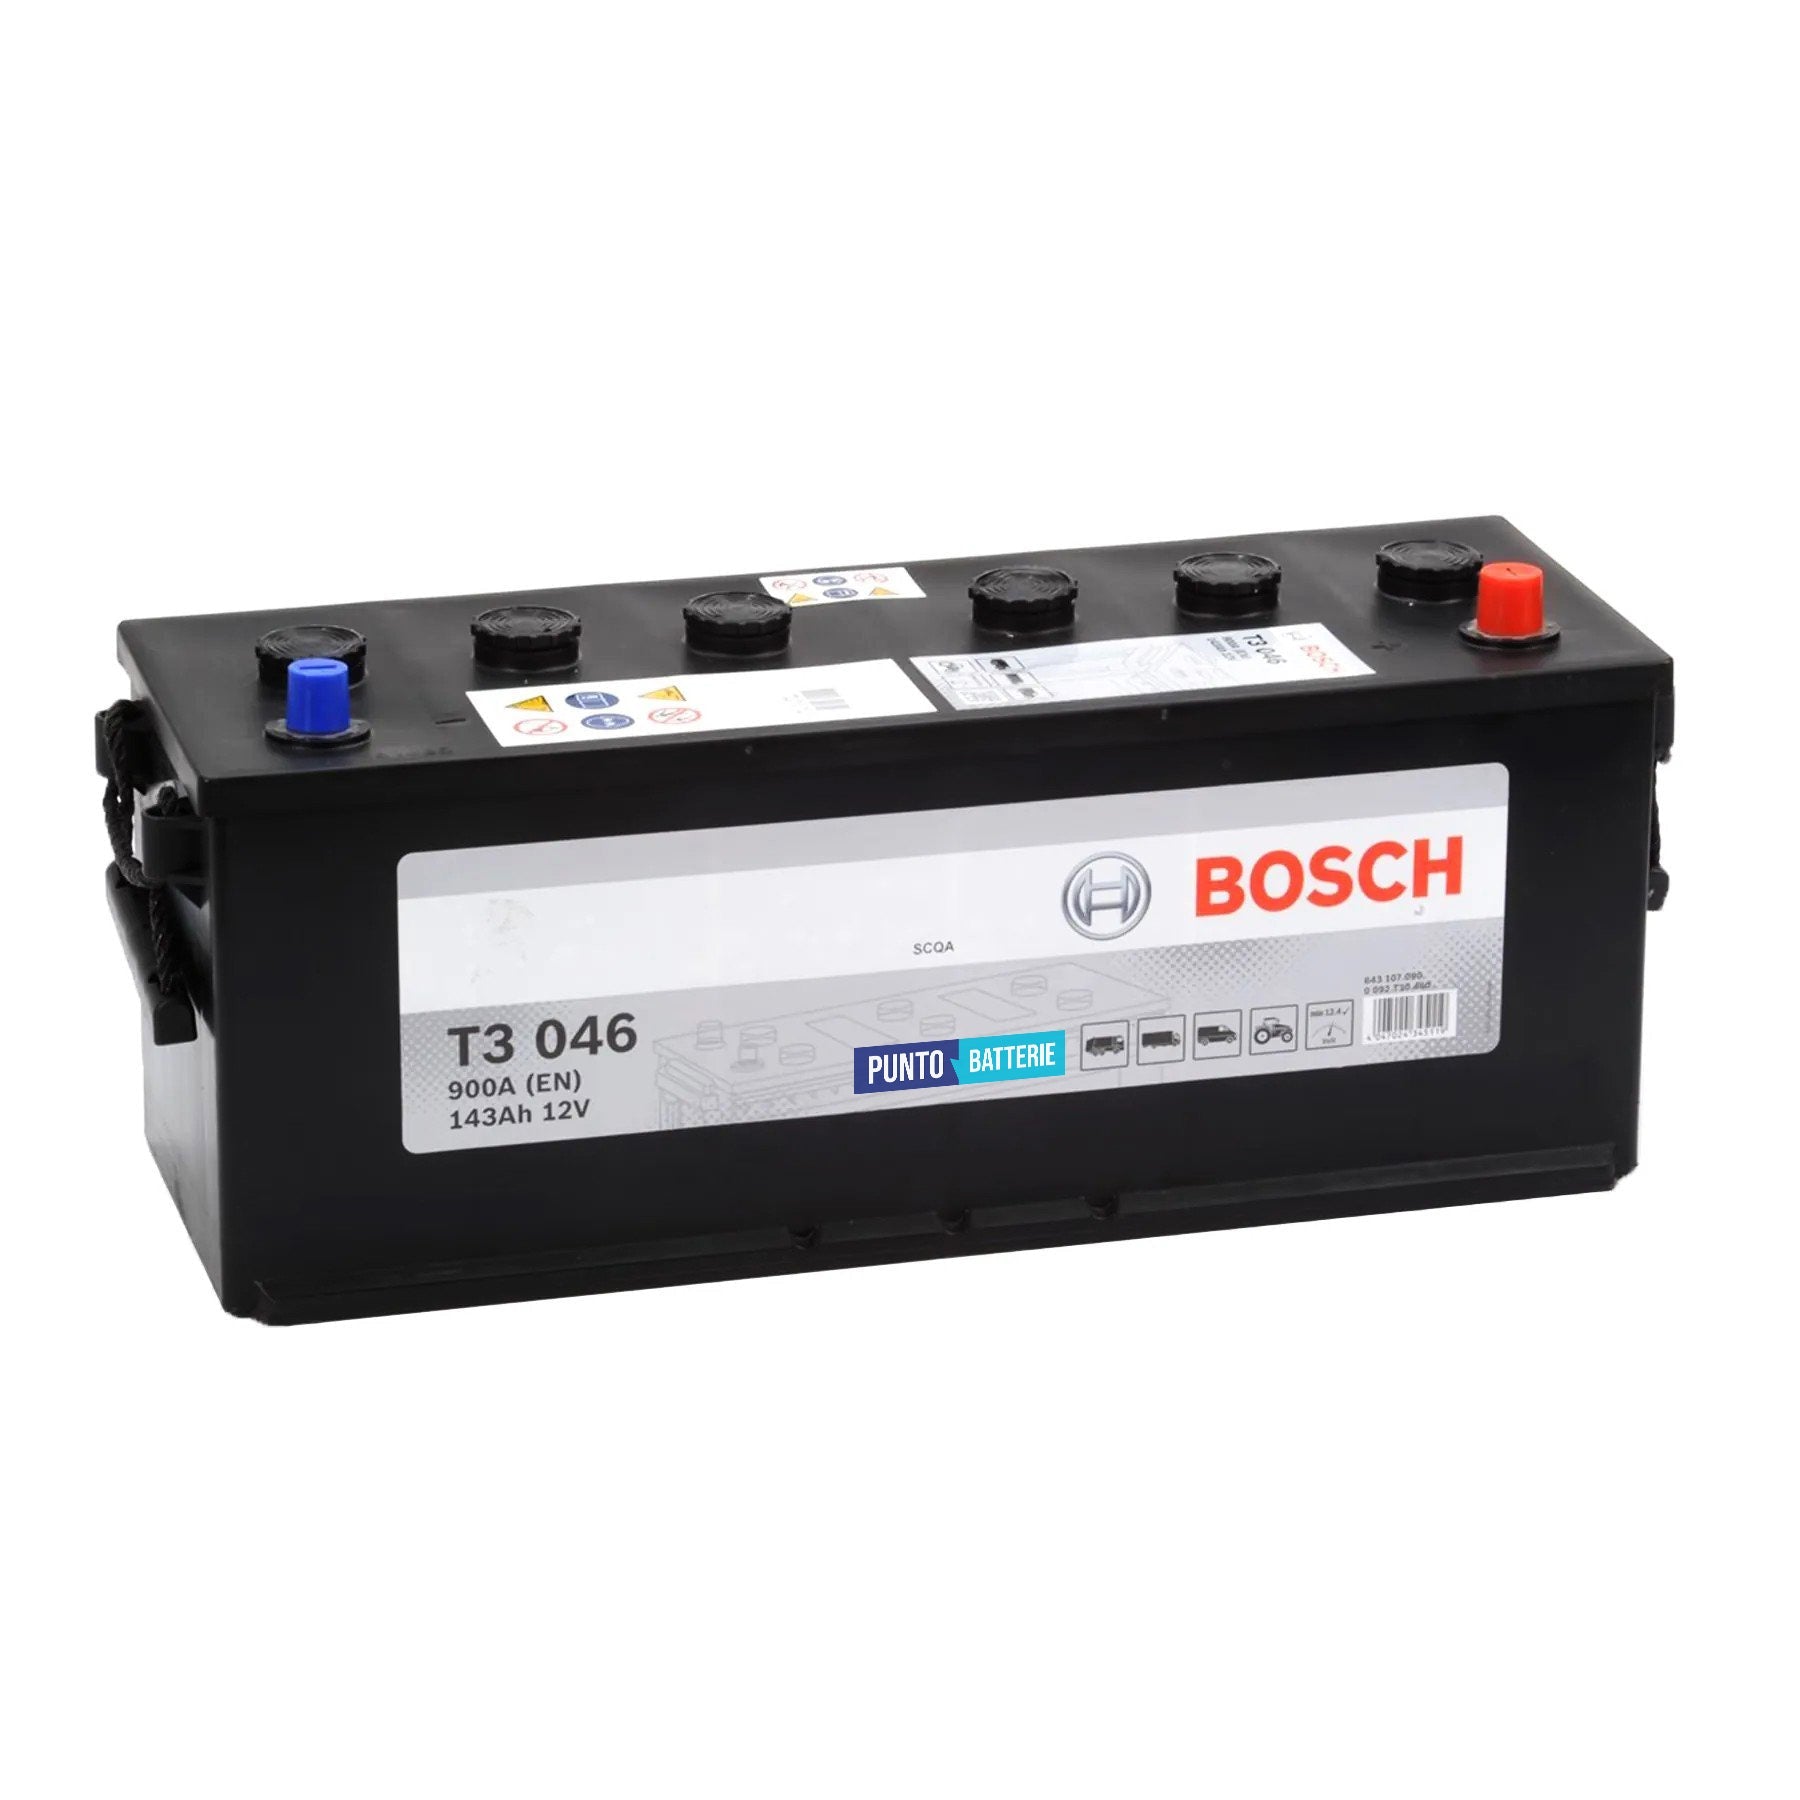 Batteria originale Bosch T3 T3046, dimensioni 508 x 174 x 205, polo positivo a destra, 12 volt, 143 amperora, 900 ampere. Batteria per camion e veicoli pesanti.